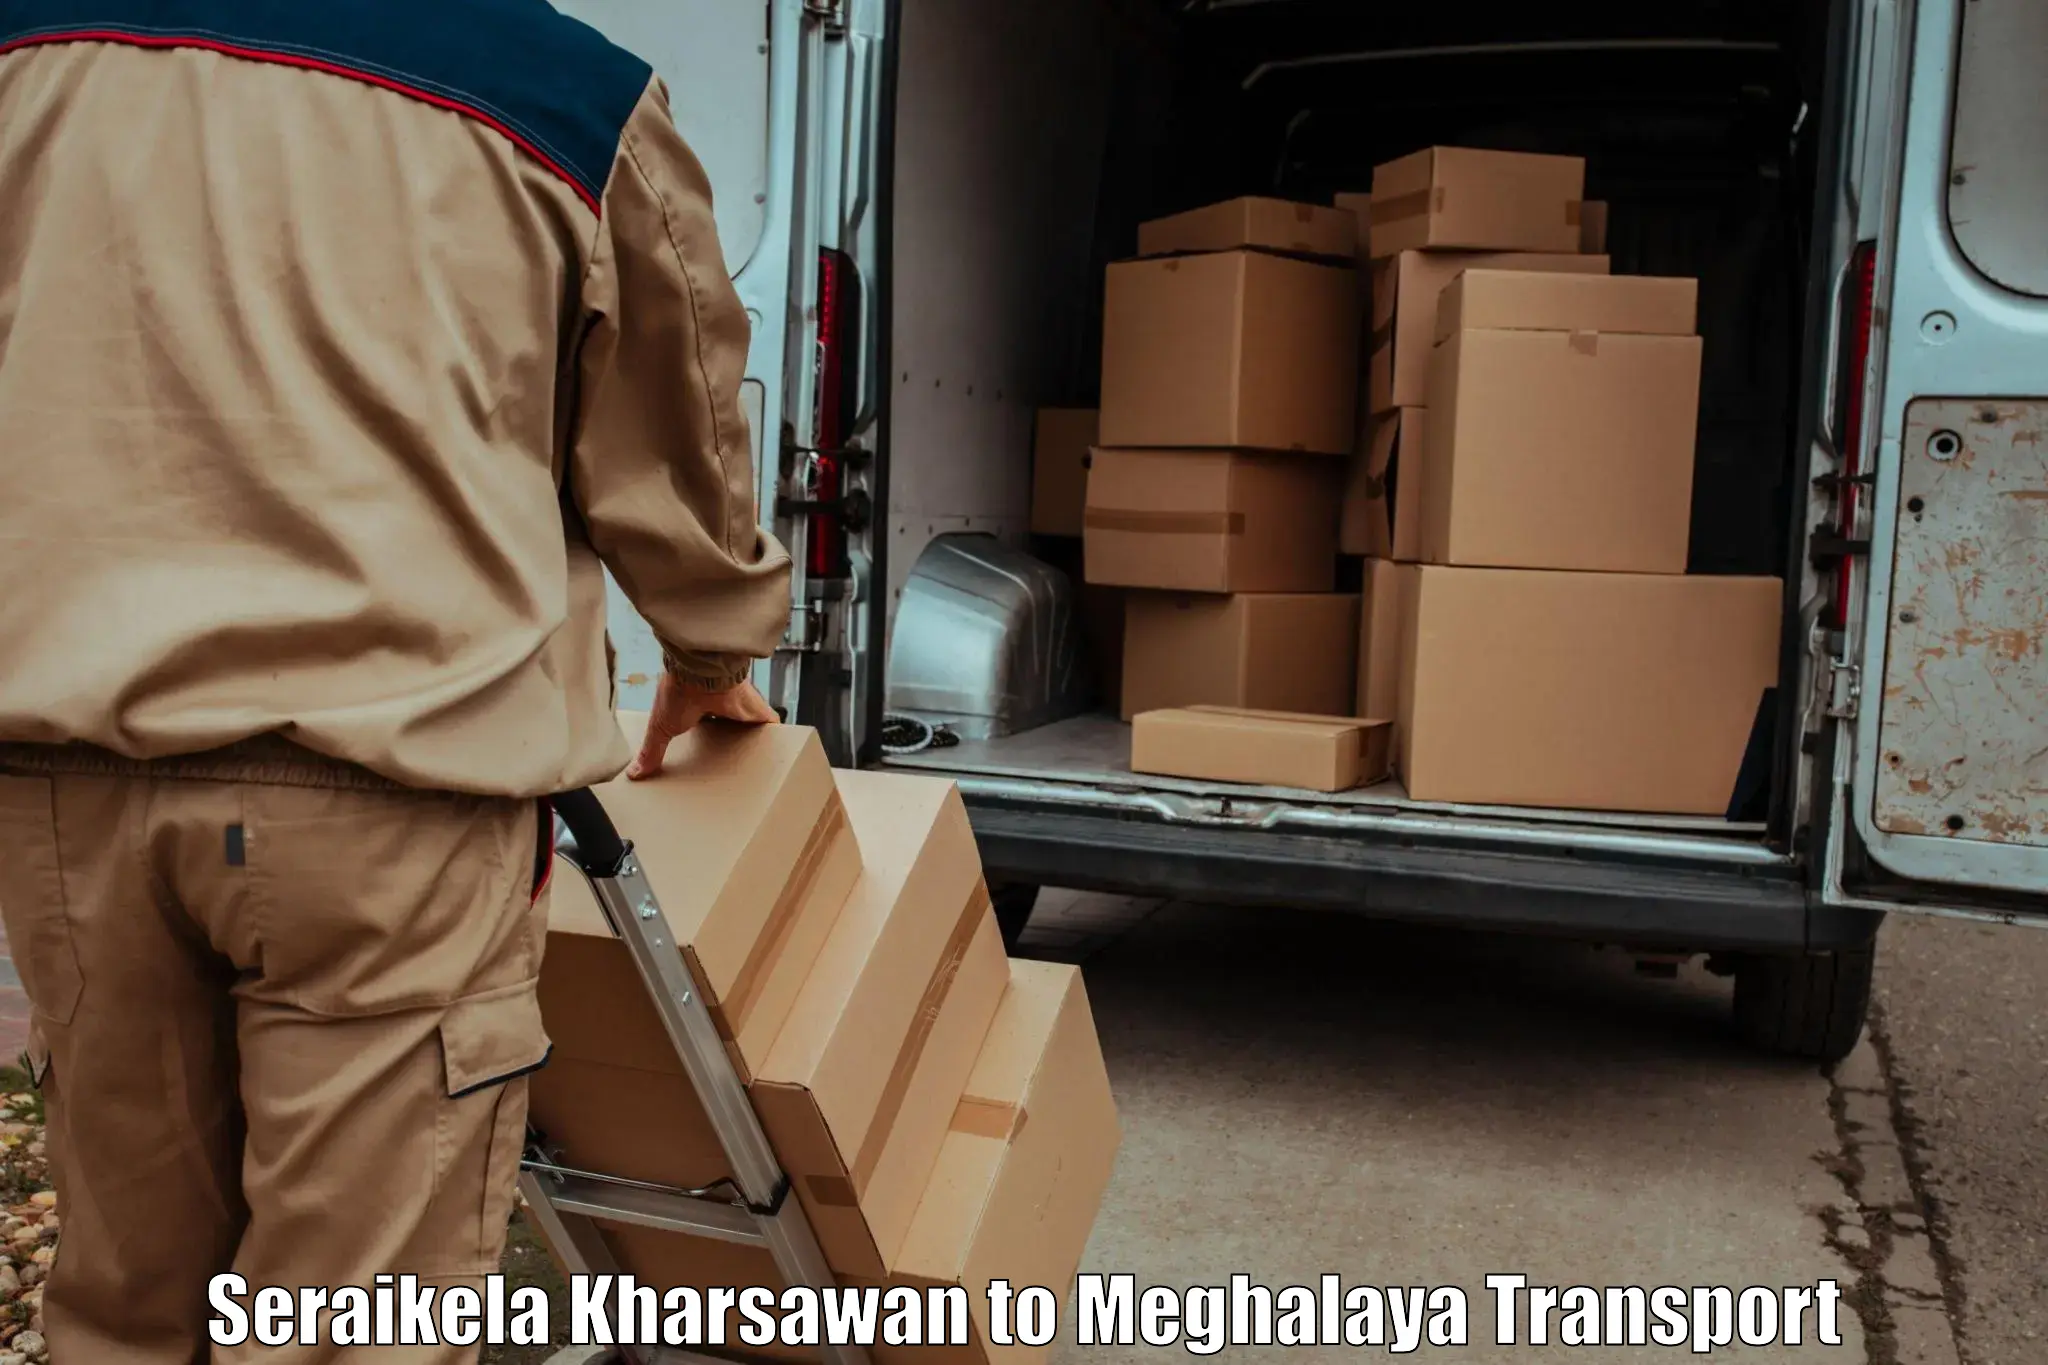 Furniture transport service Seraikela Kharsawan to Meghalaya